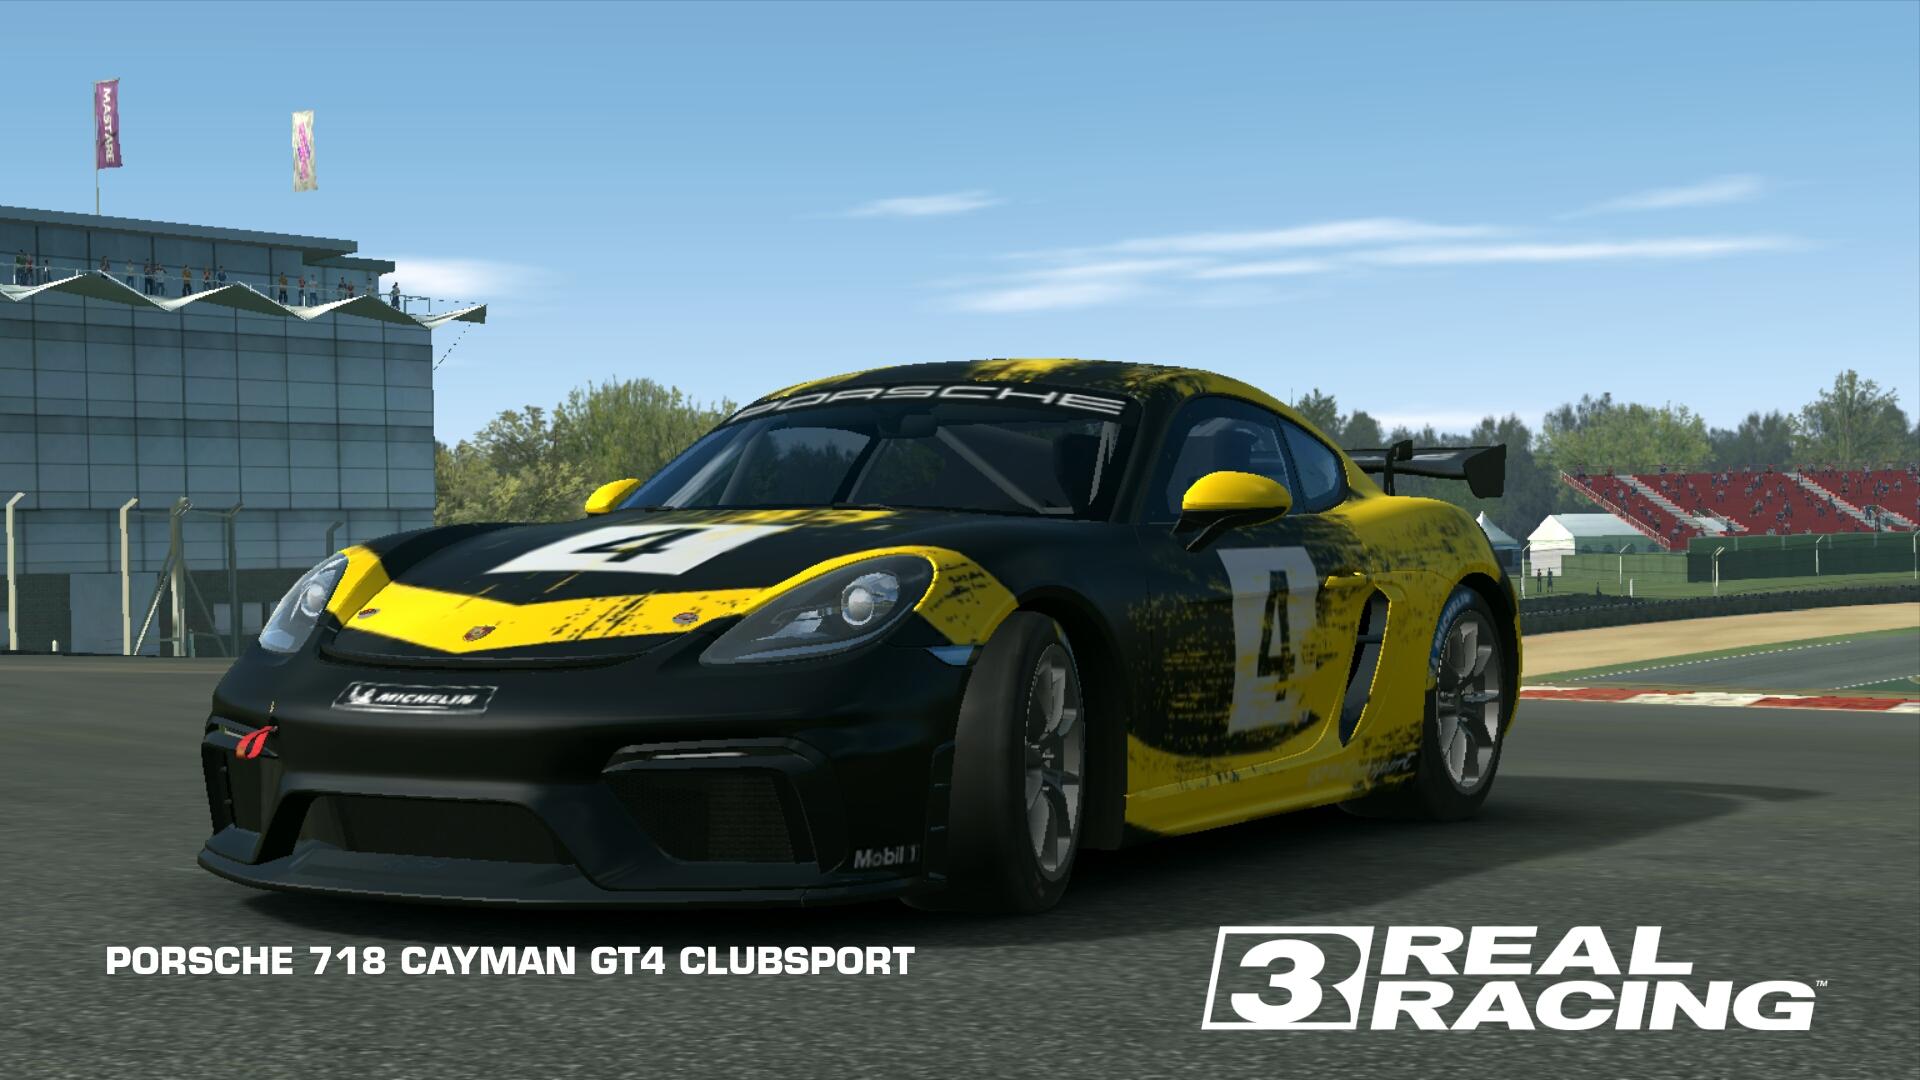 PORSCHE 718 CAYMAN GT4 CLUBSPORT. Real Racing 3